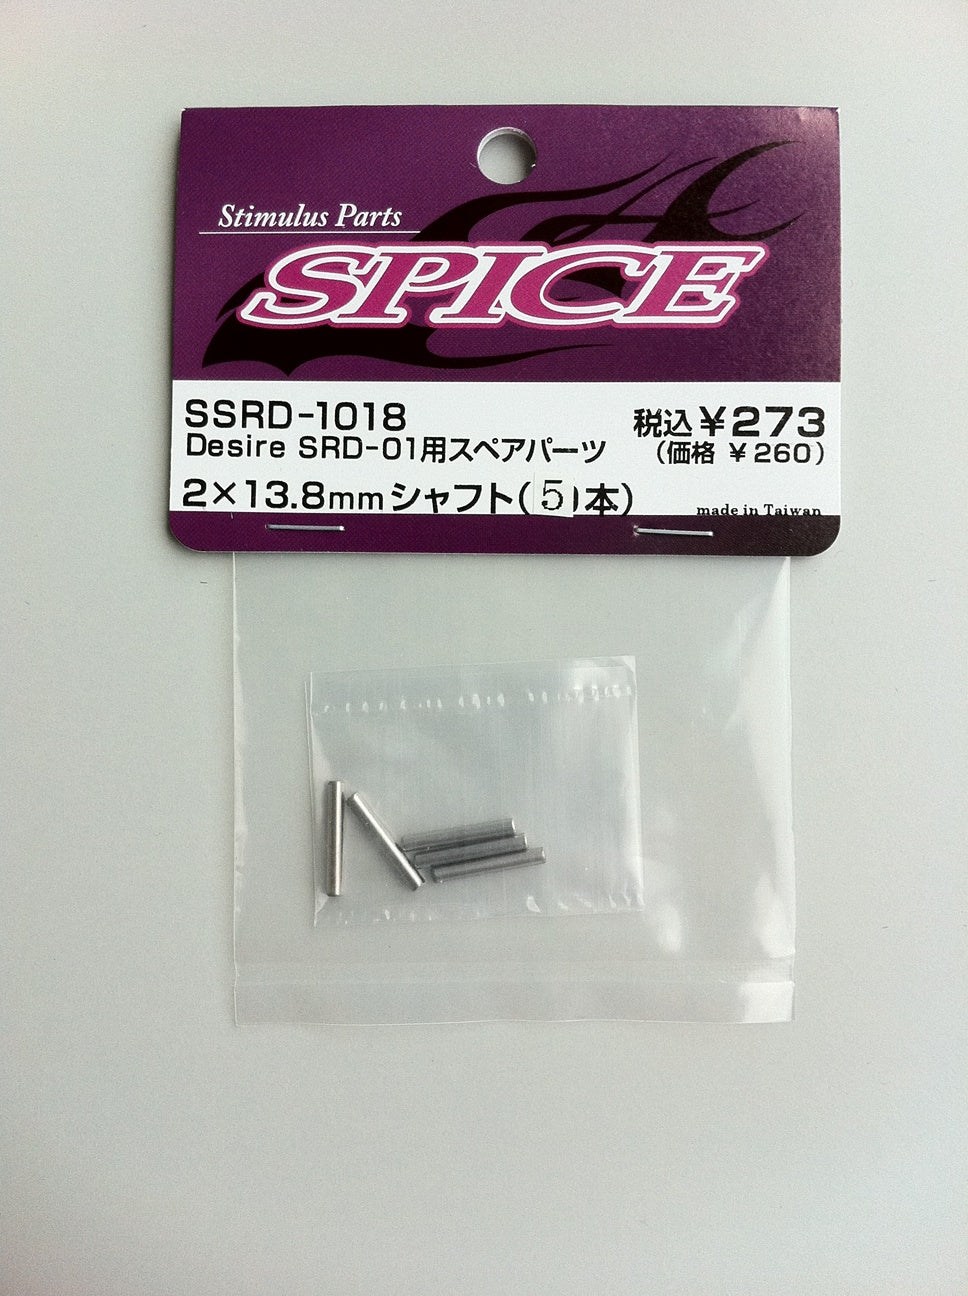 SSRD-1018 Shaft 2?13.8 (5)